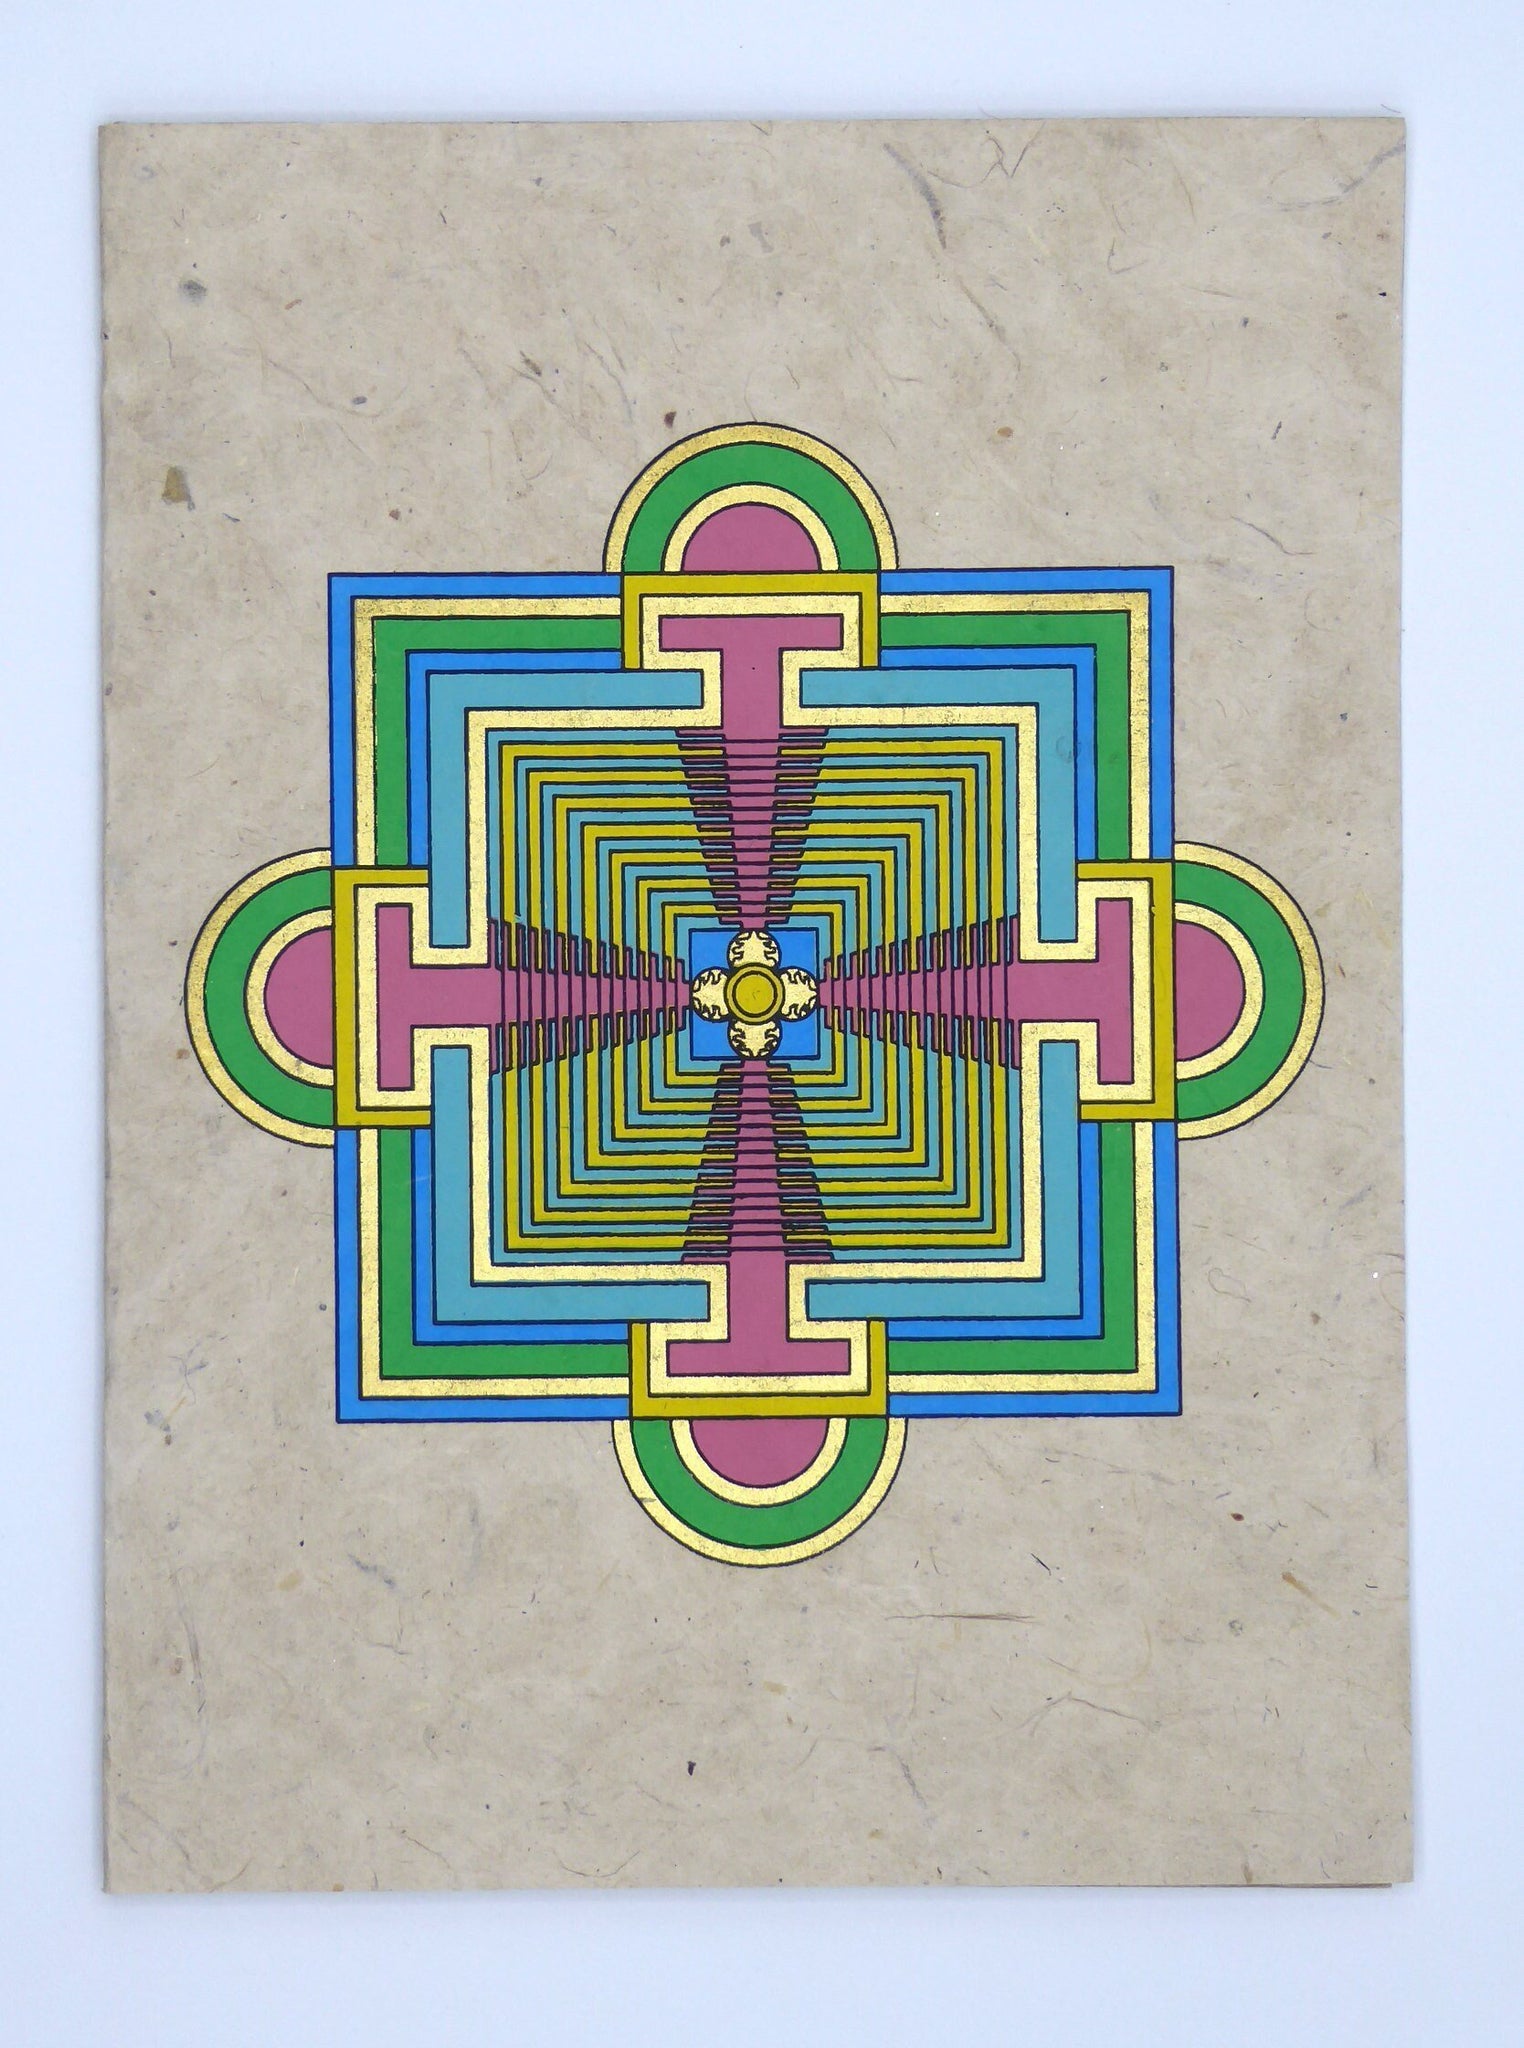 Handmade Lokta Card, Mandala